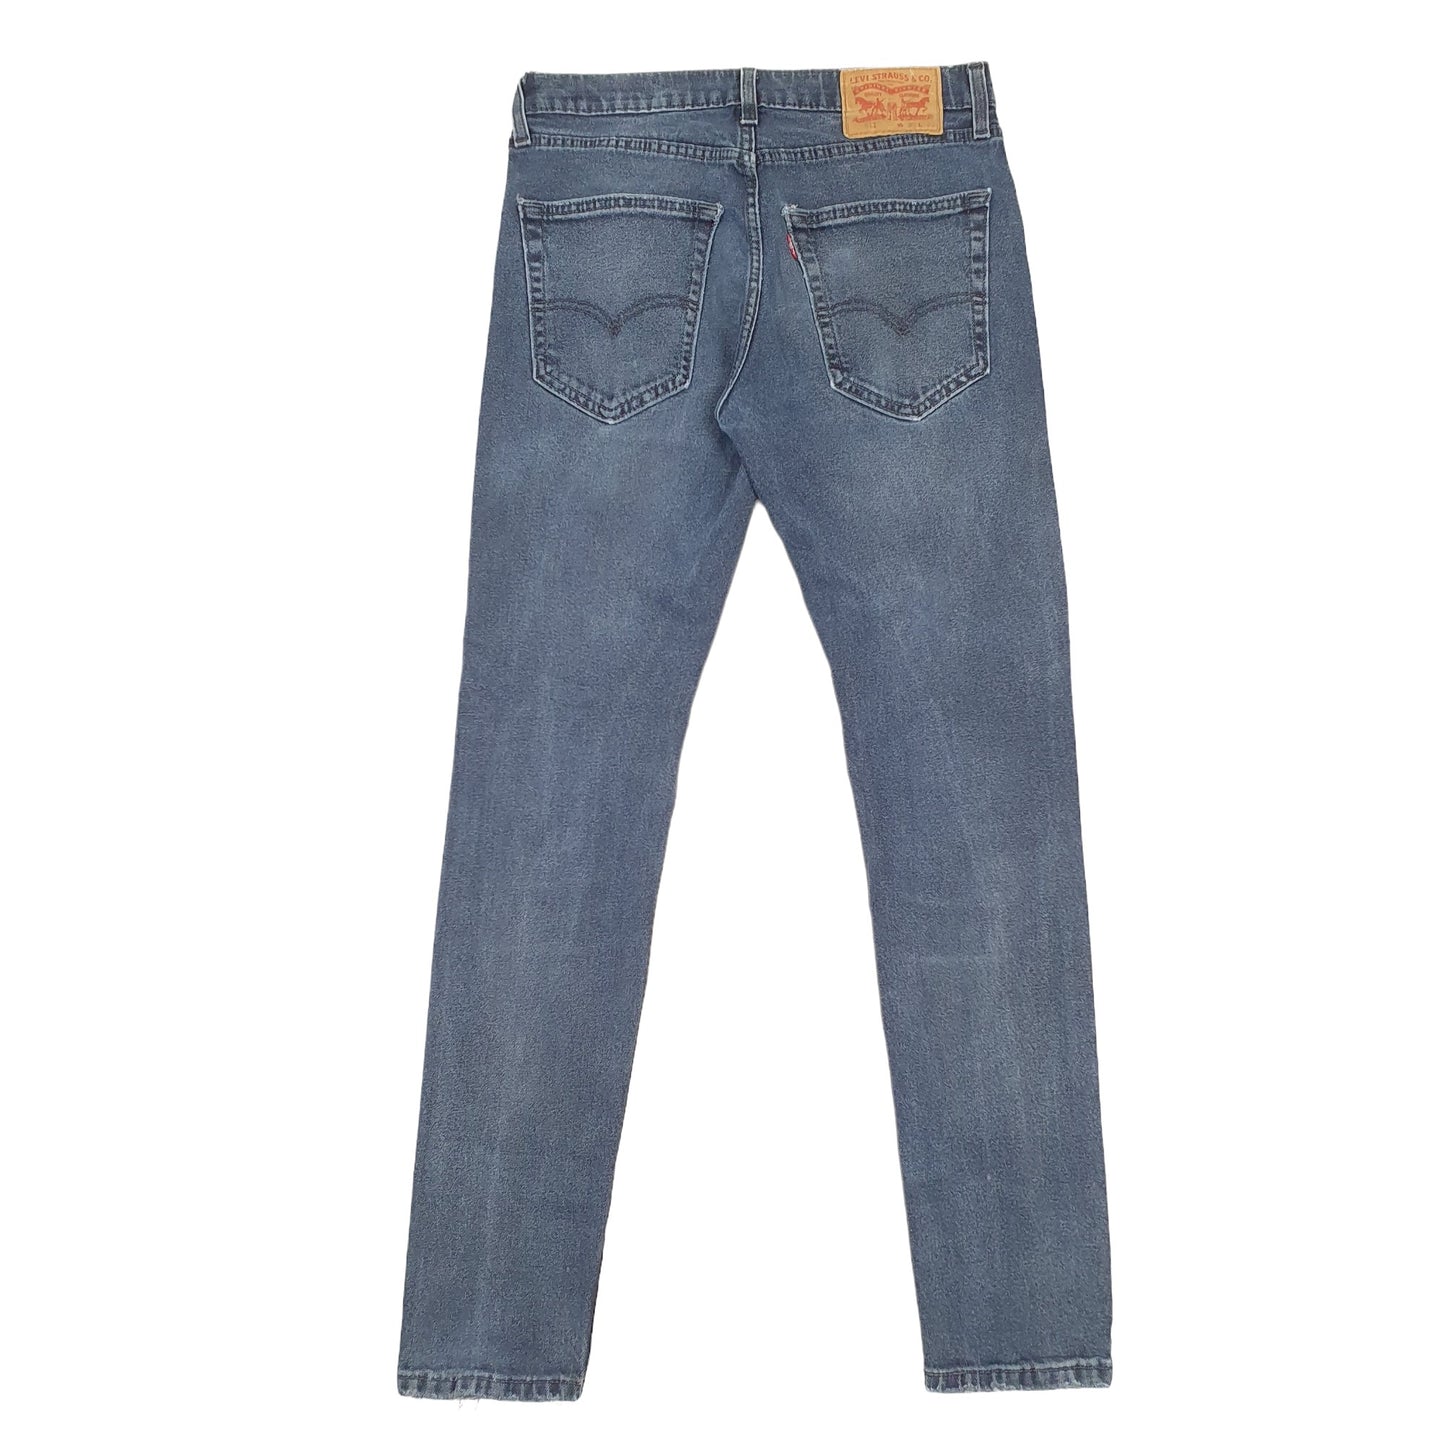 Mens Levis 512 Slim Fit Navy Jeans W30 L30 – Bundl Clothing